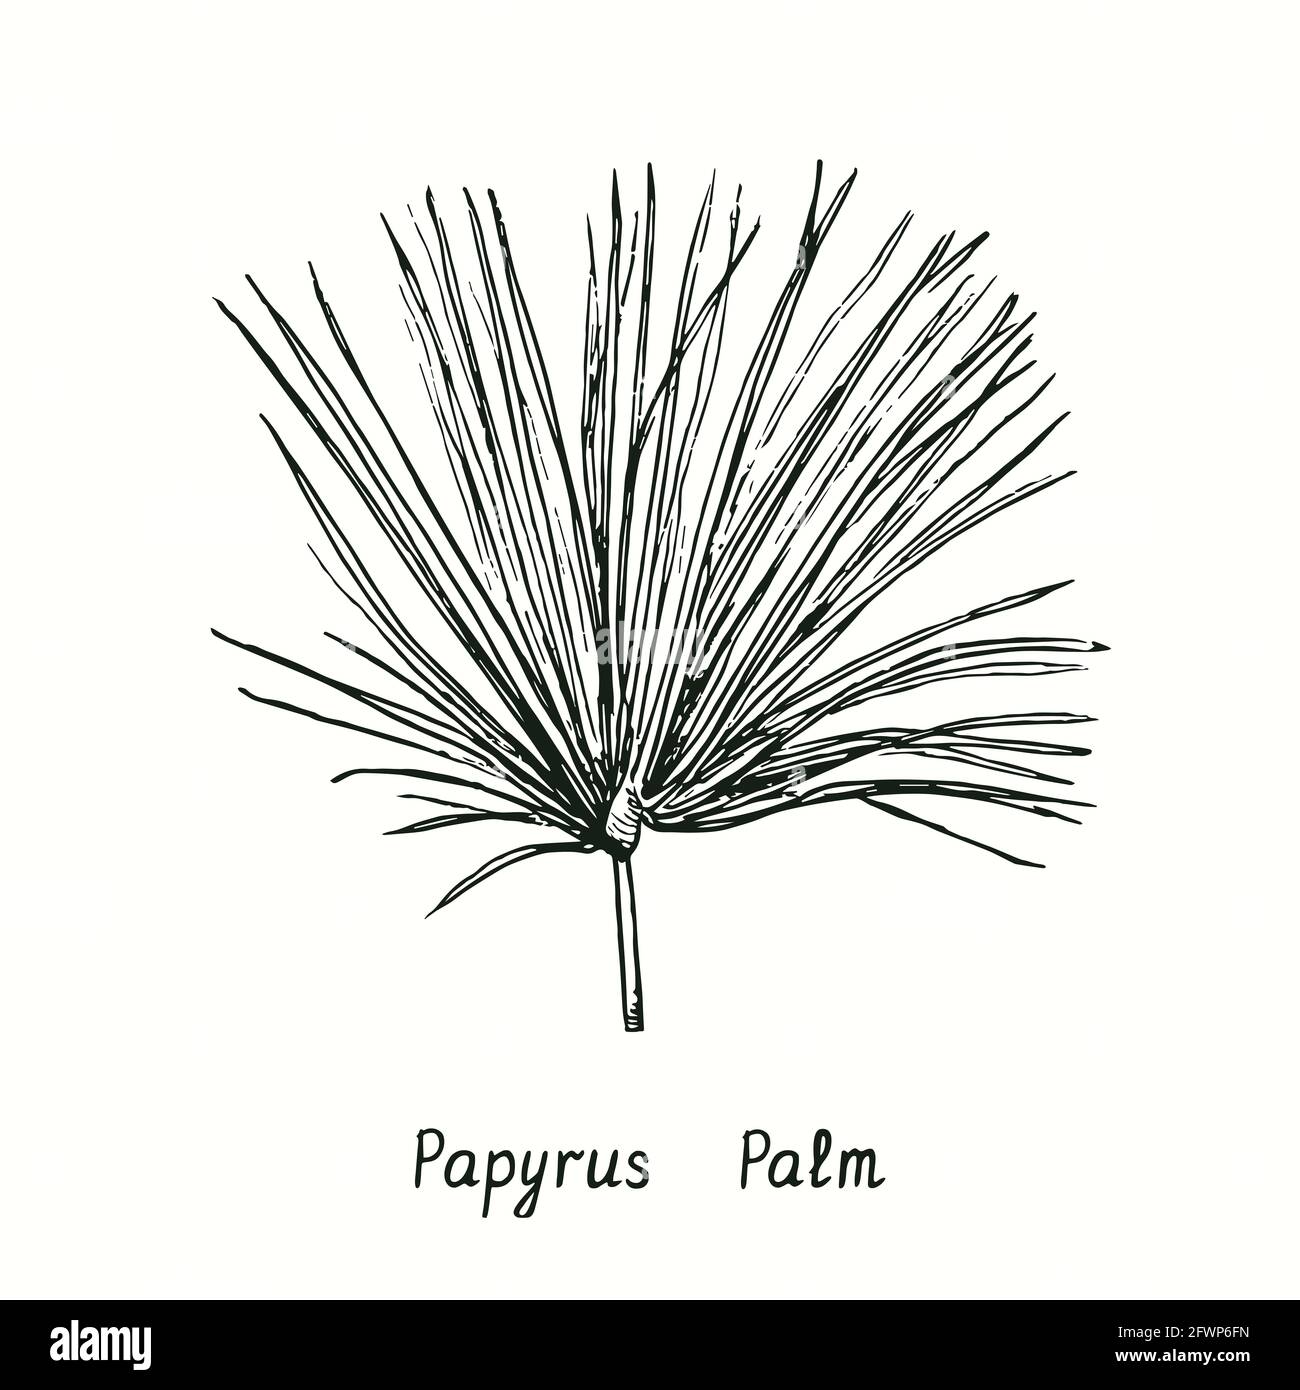 Papyrus Palmwedel. Tusche schwarz-weiße Doodle Zeichnung im Holzschnitt-Stil. Stockfoto